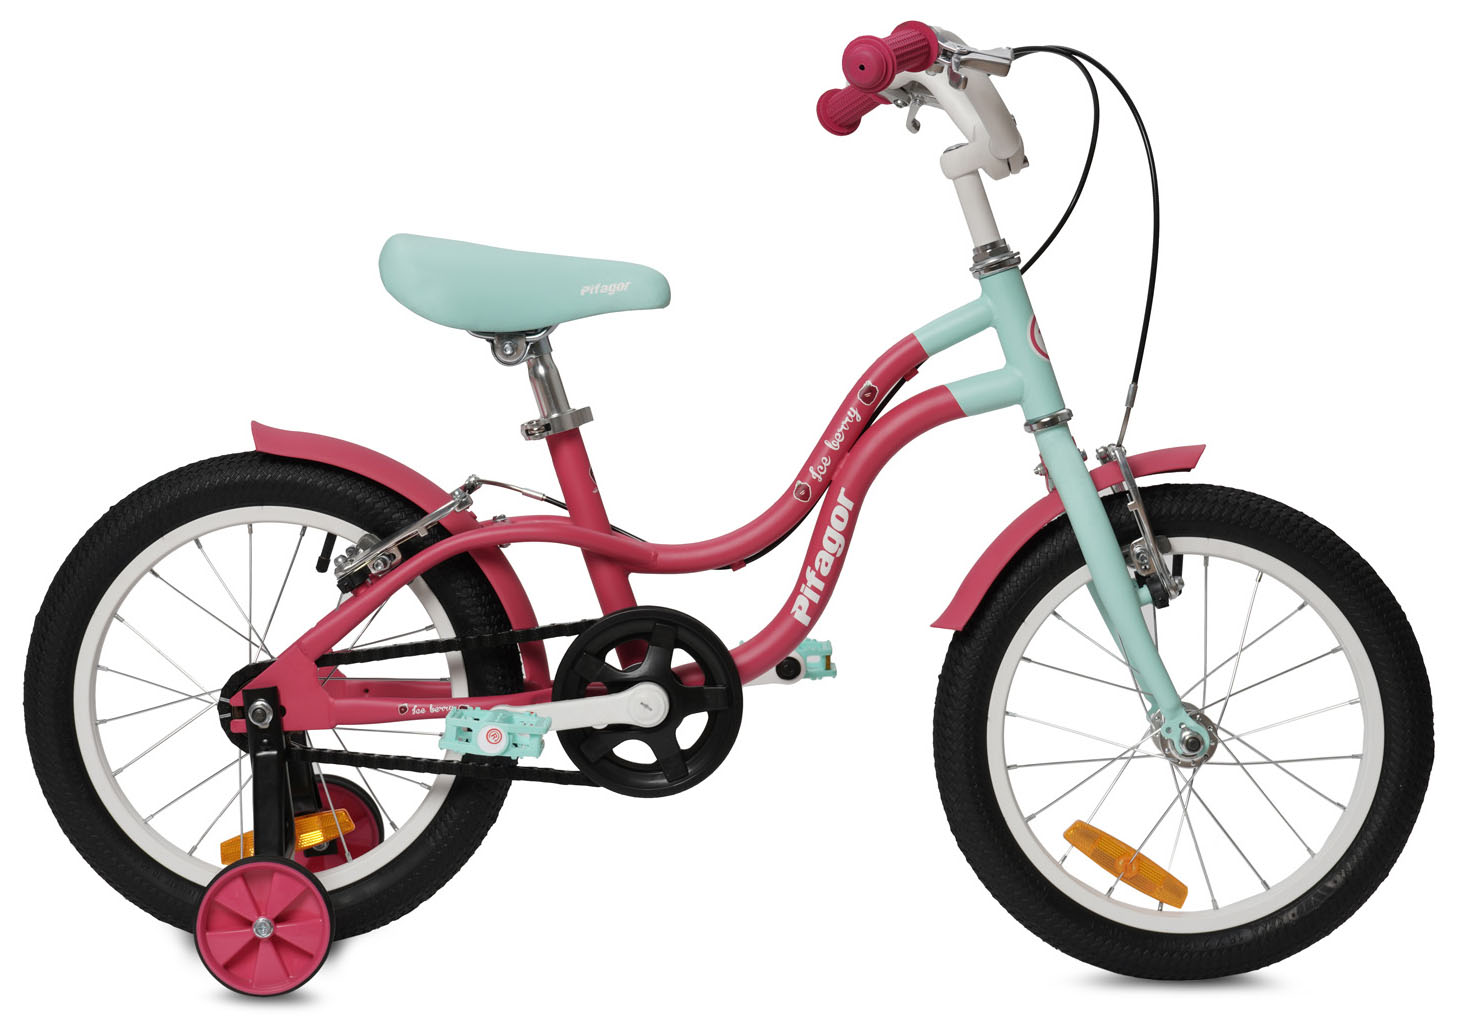  Отзывы о Детском велосипеде Pifagor IceBerry 16 2022